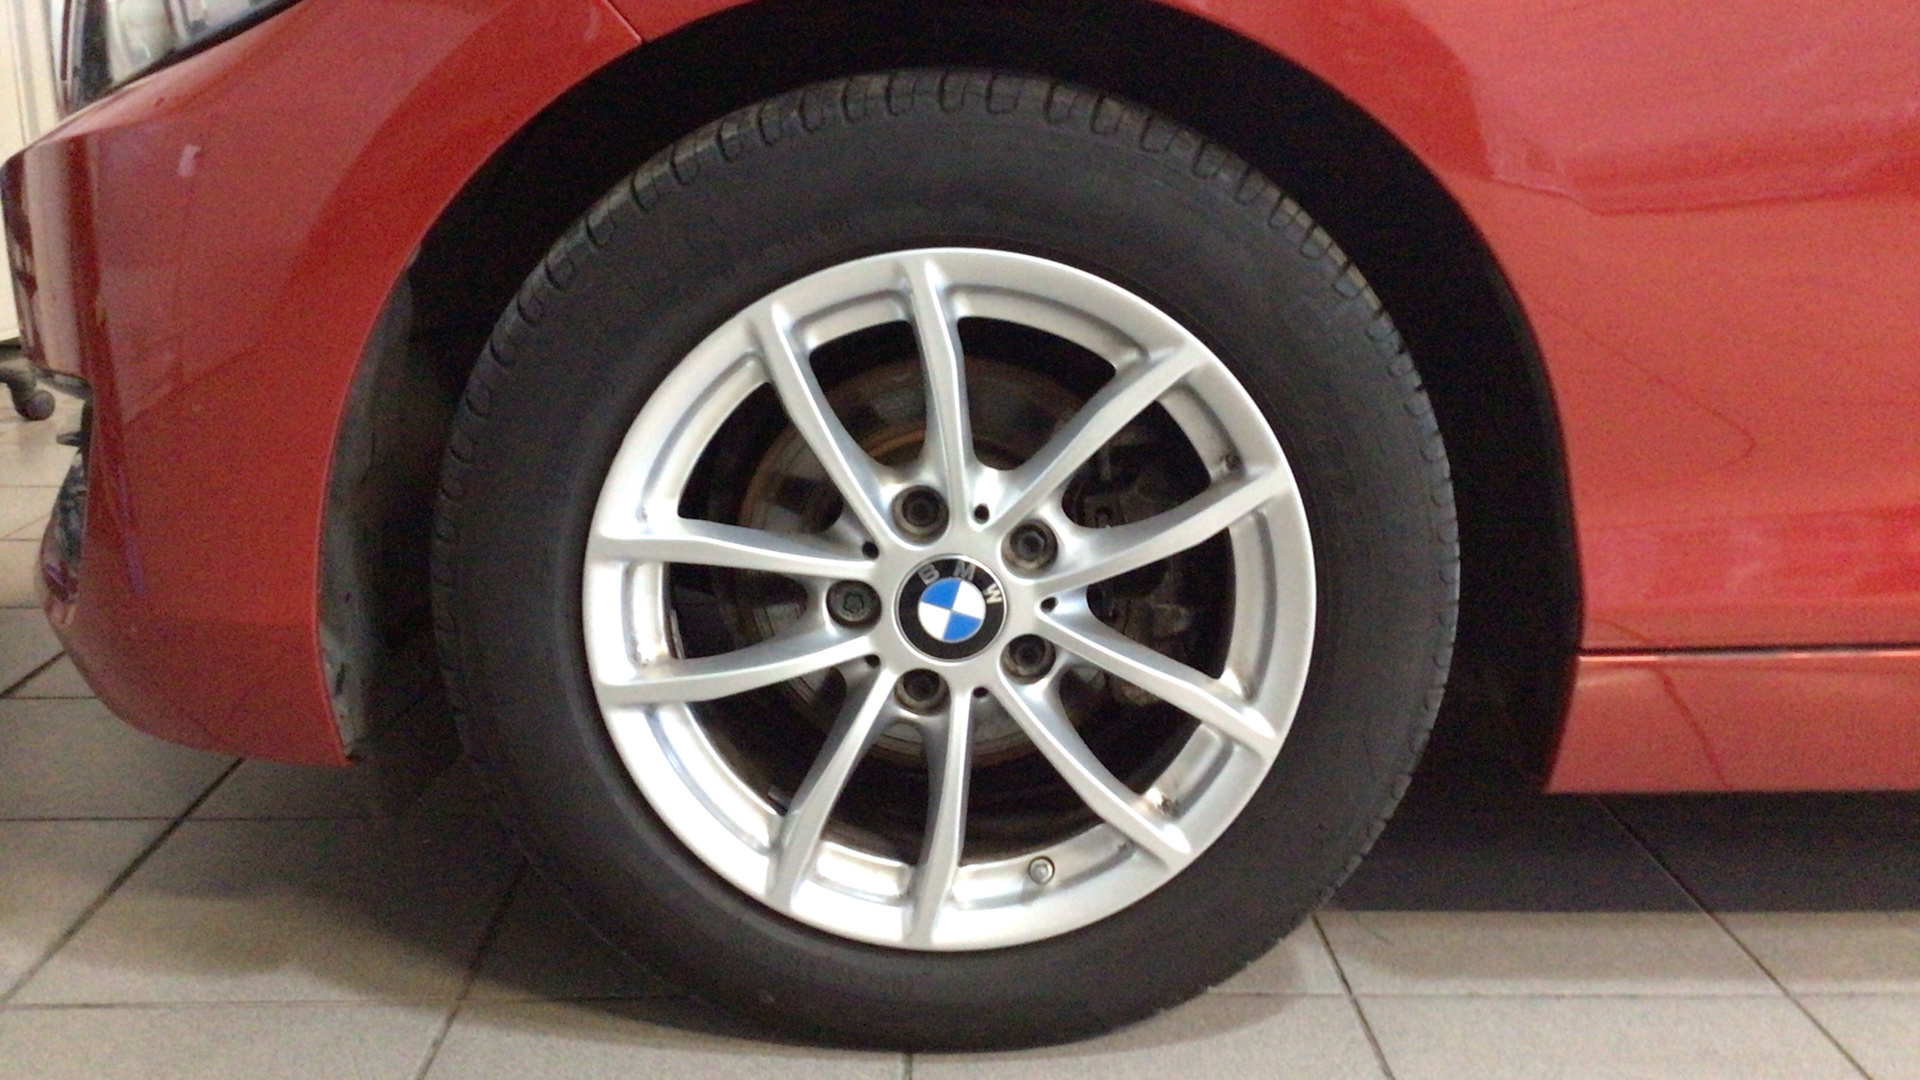 BMW Serie 2 218d Coupe color Rojo. Año 2018. 110KW(150CV). Diésel. En concesionario BYmyCAR Madrid - Alcalá de Madrid